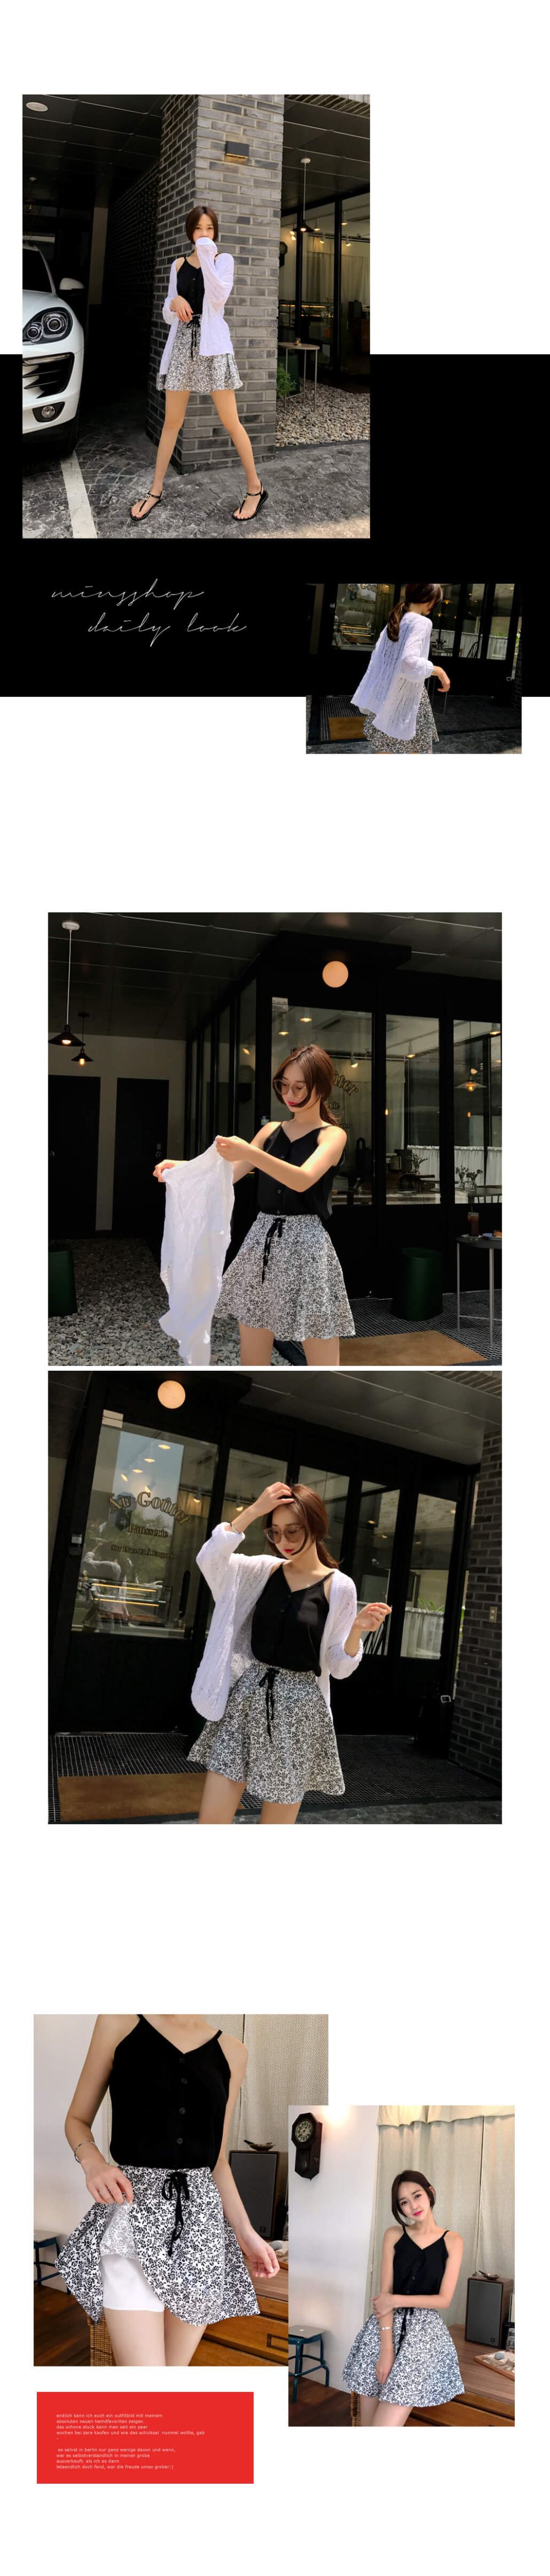 韓國平價服飾 無袖上衣+裙子 